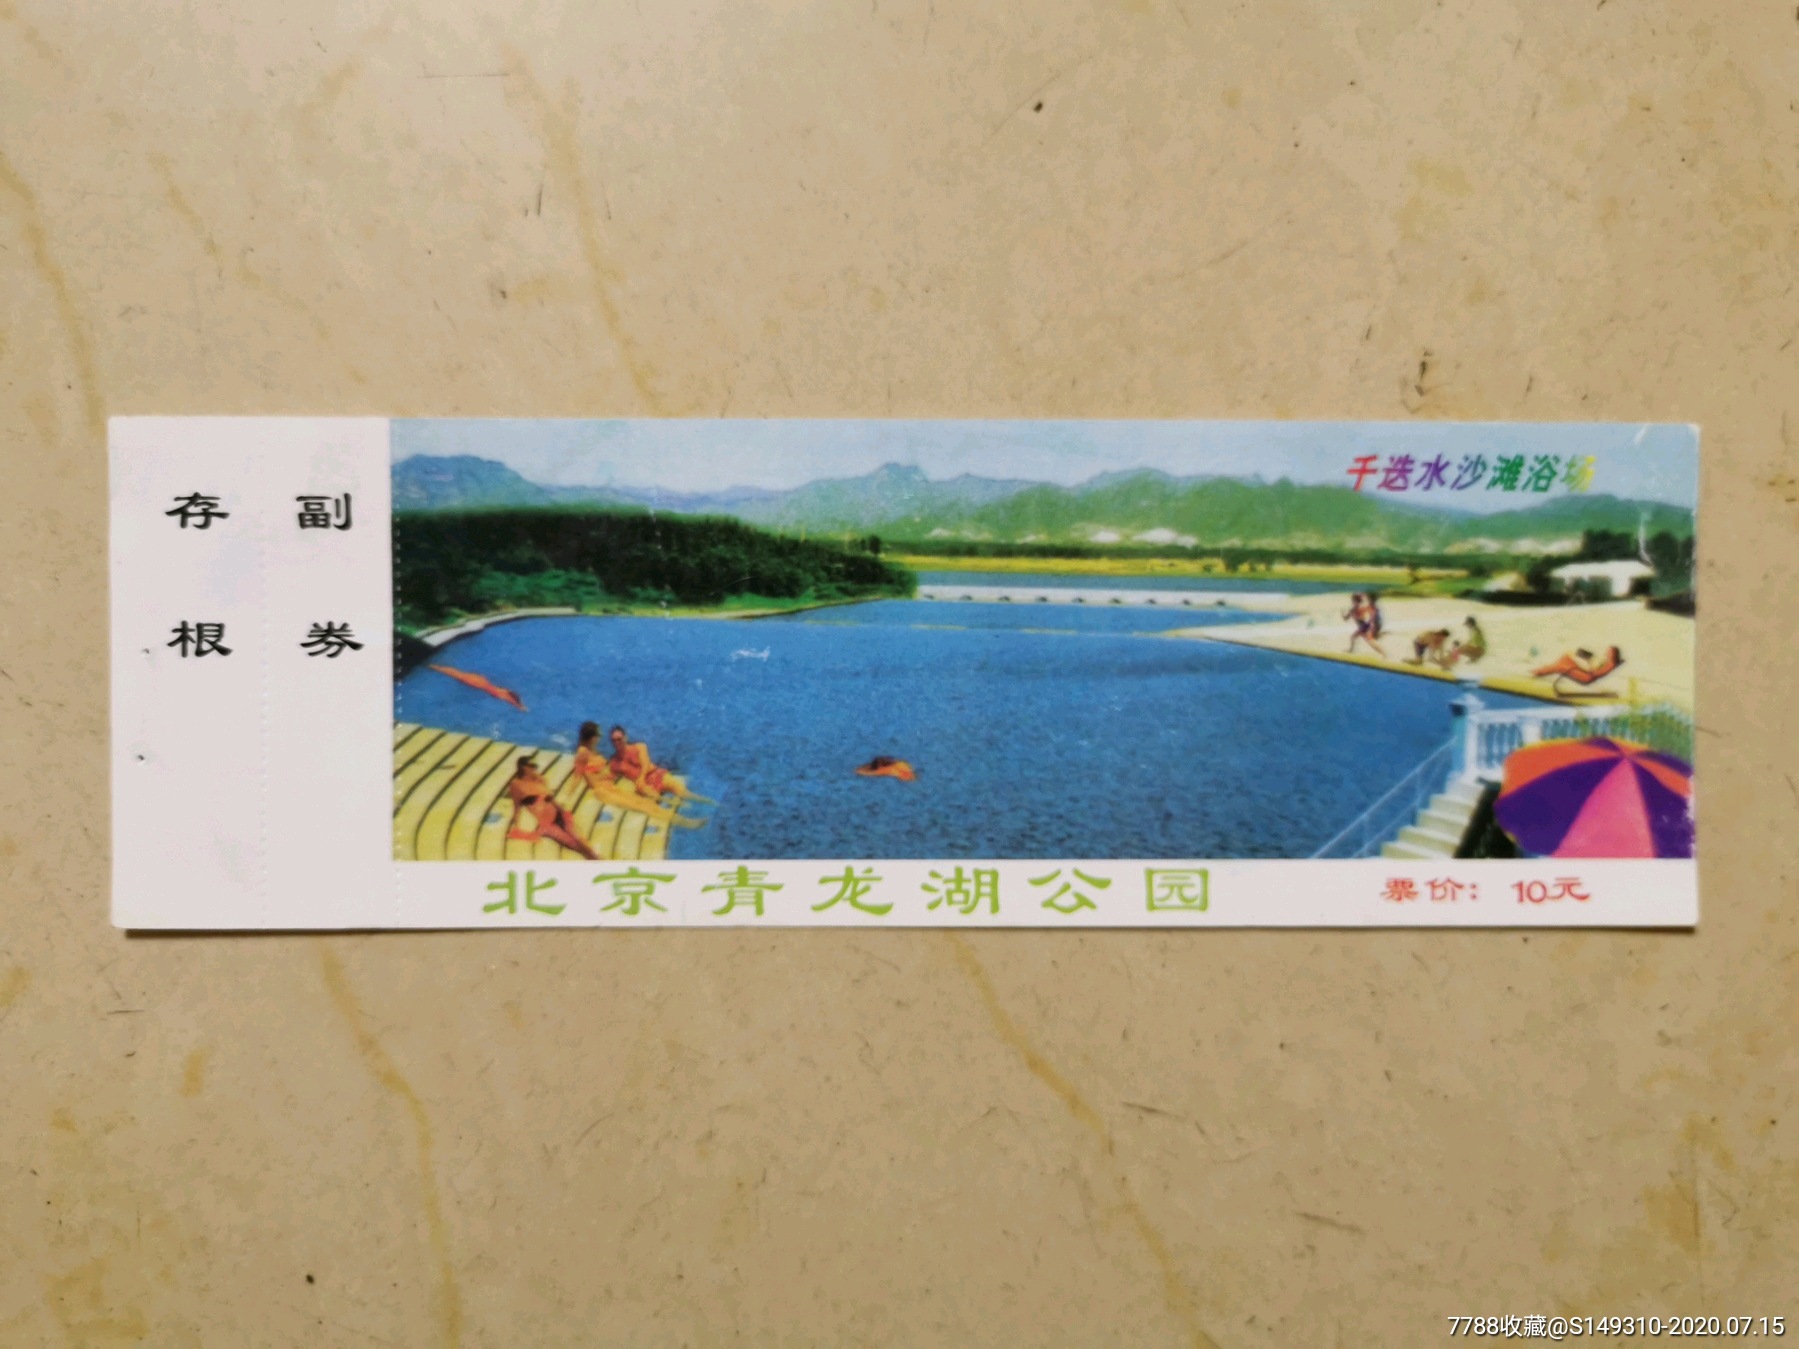 北京青龙湖公园,旅游景点门票,园林/公园,入口票,北京,21世纪10年代